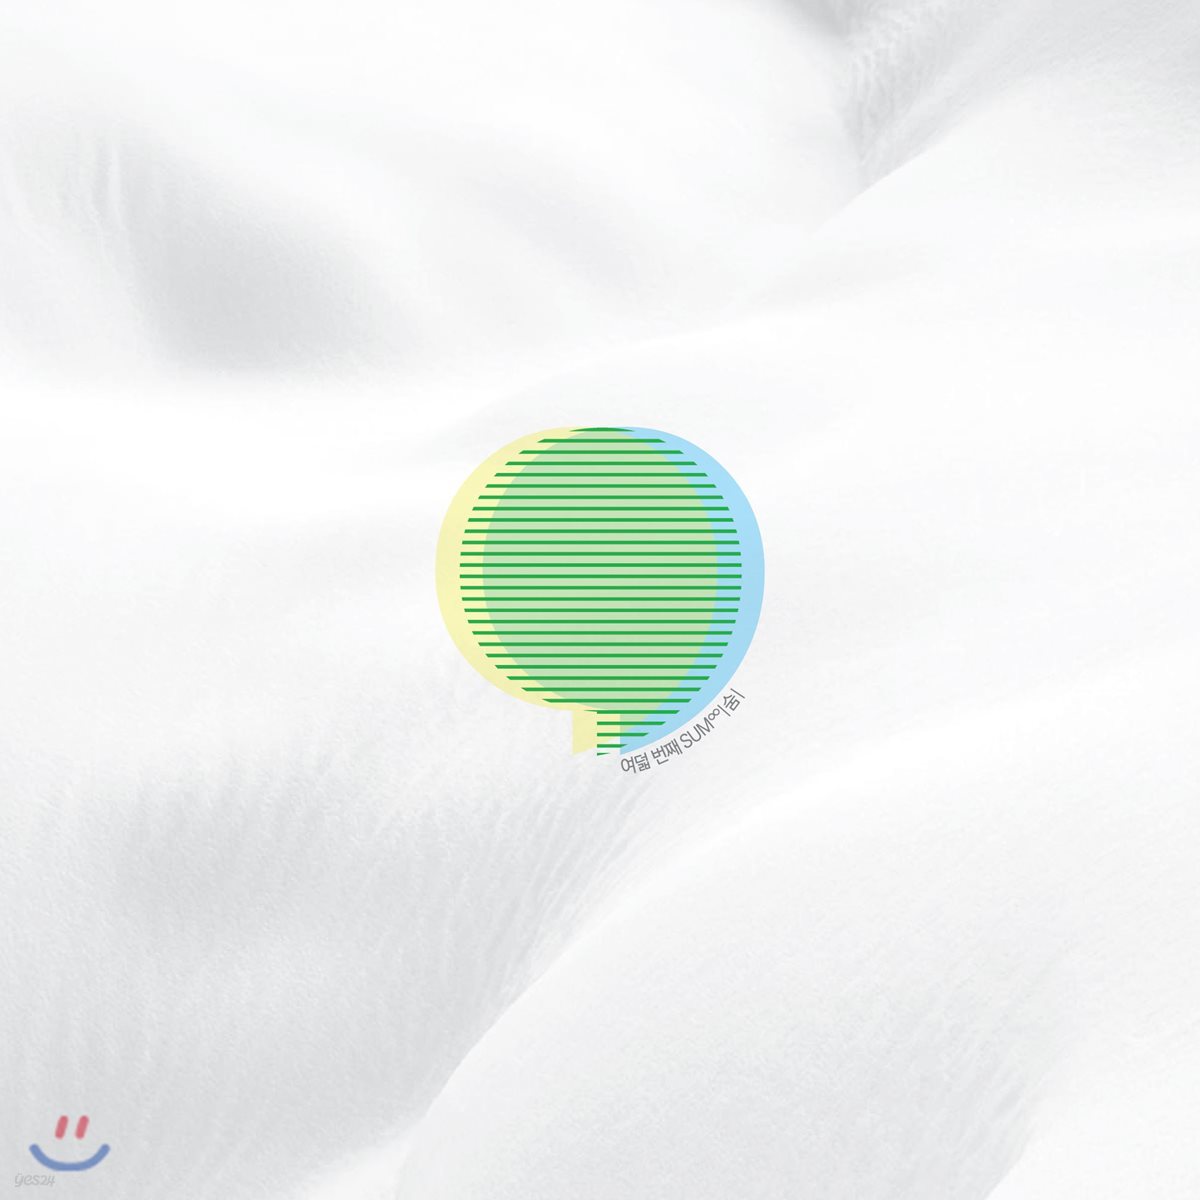 그린플러그드 공식 옴니버스 앨범 8집 - SUM (숨∞) [LP]